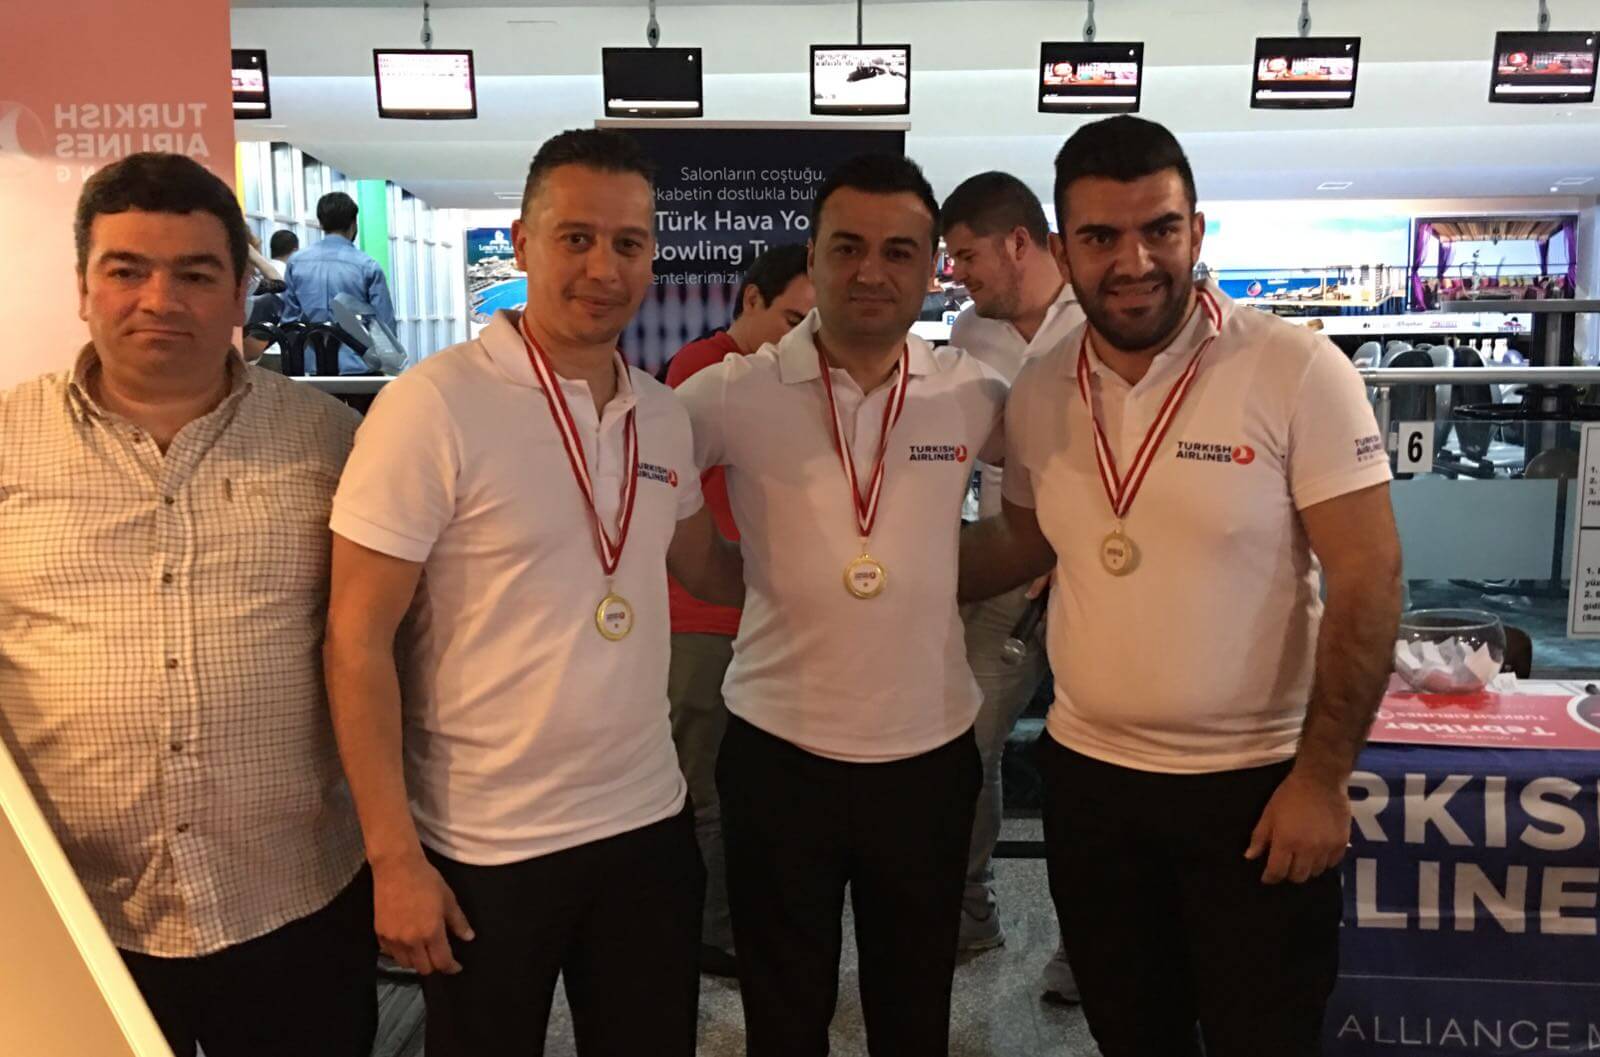 Türk Hava Yolları Tarafından Gerçekleştirilen Bowling Turnuvasının KKTC Şampiyonu Dorana Turizm Oldu